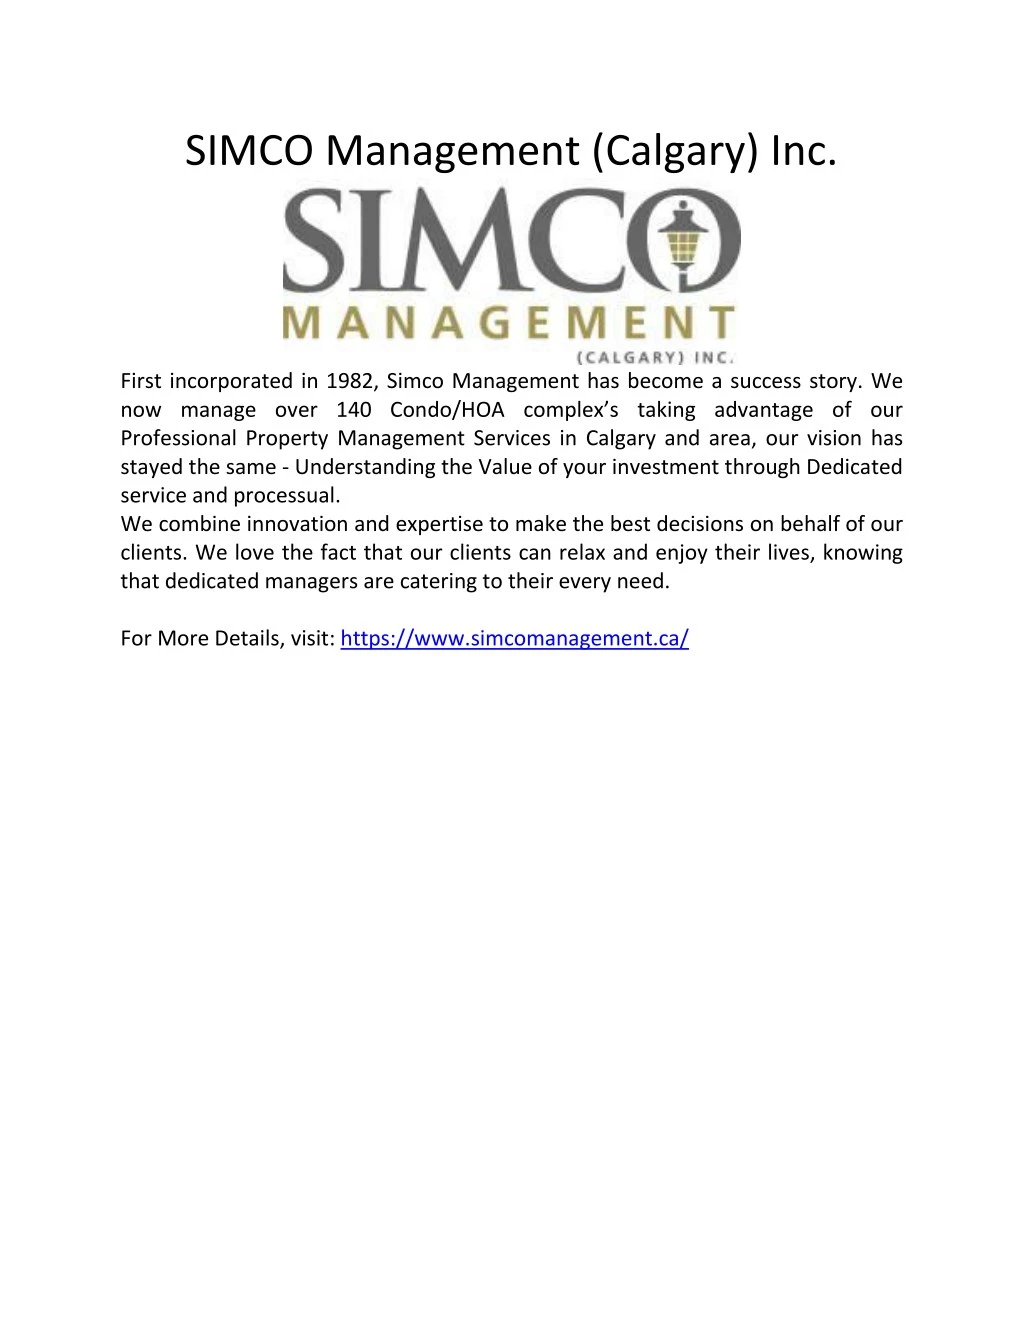 simco management calgary inc